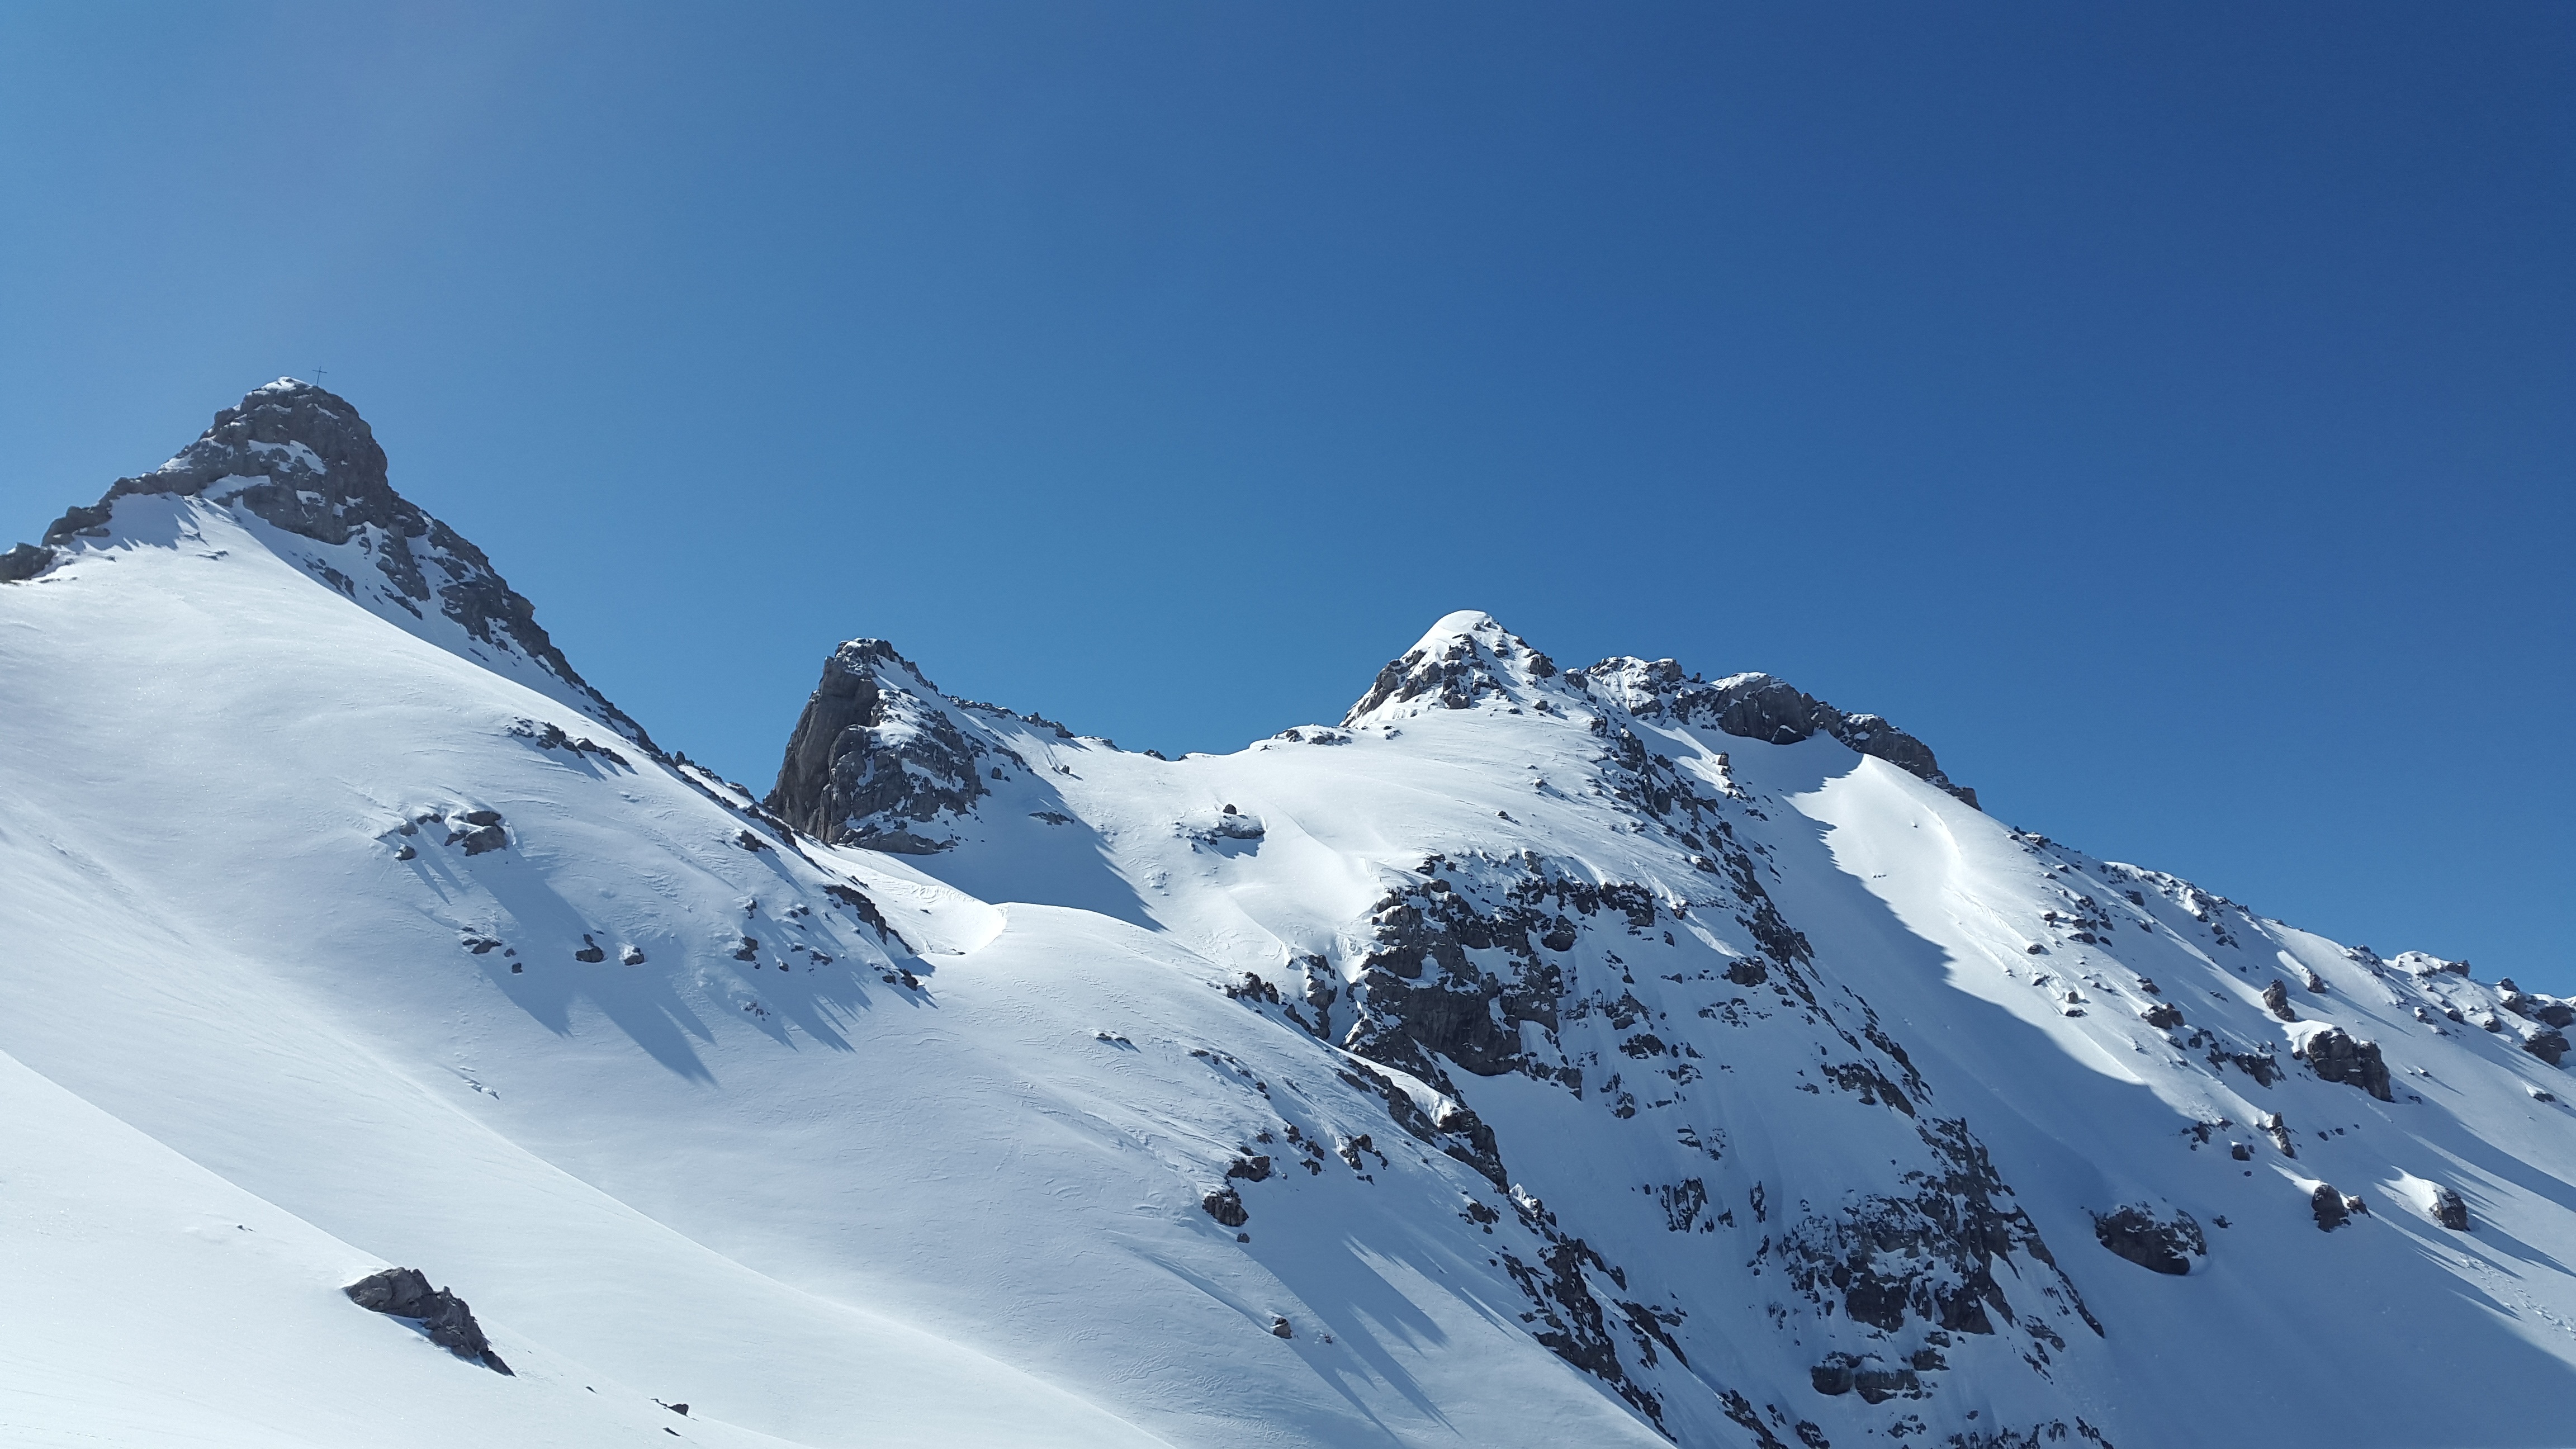 Скачать обои бесплатно Зима, Природа, Горы, Снег, Гора, Австрия, Альпы, Земля/природа картинка на рабочий стол ПК